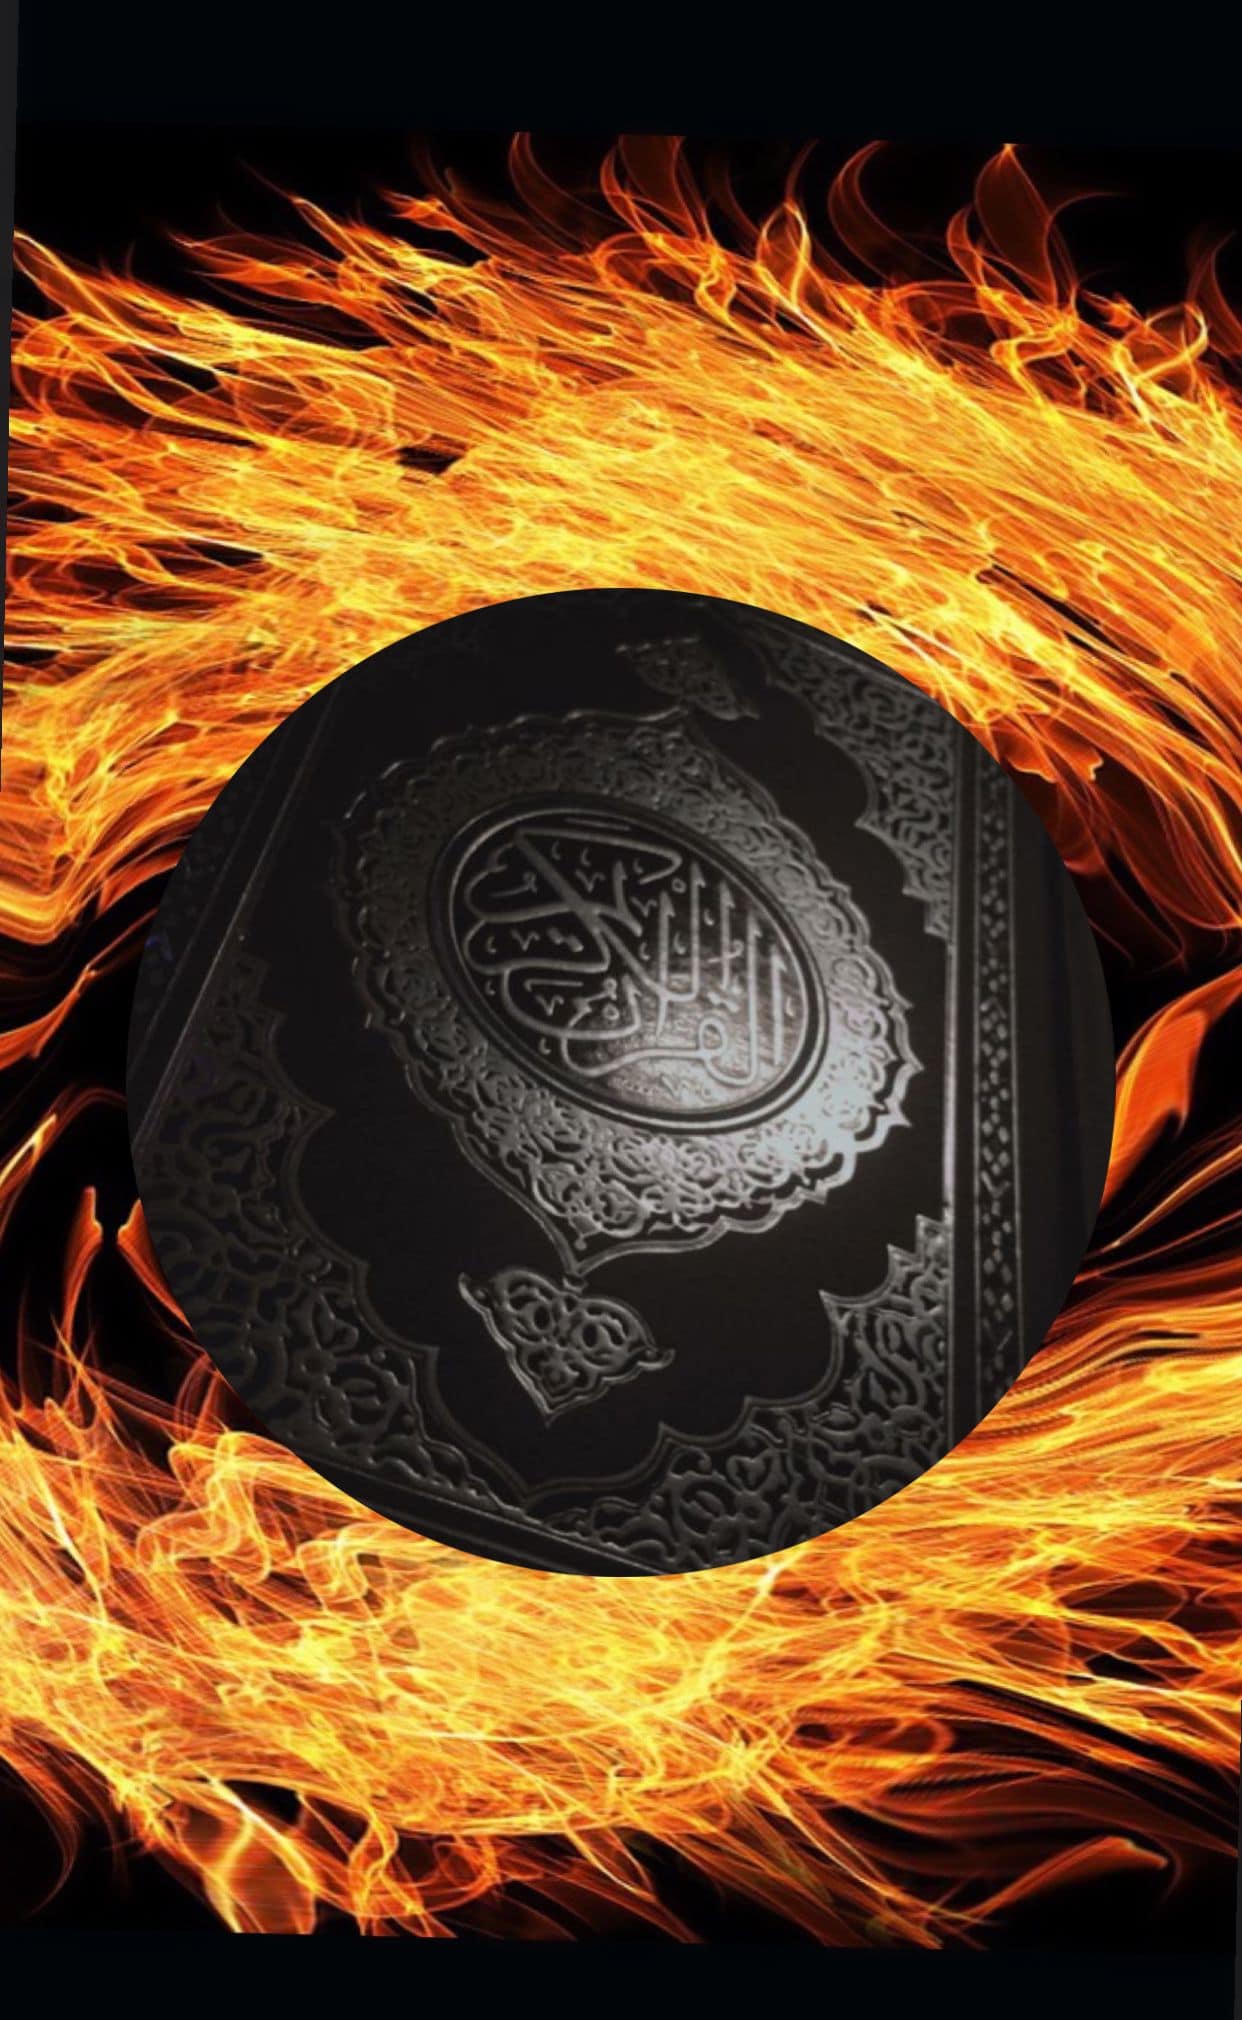 Koran-Verbrennung in Hamburg: Wir sollten die Heiligtümer aller Religionen respektieren!